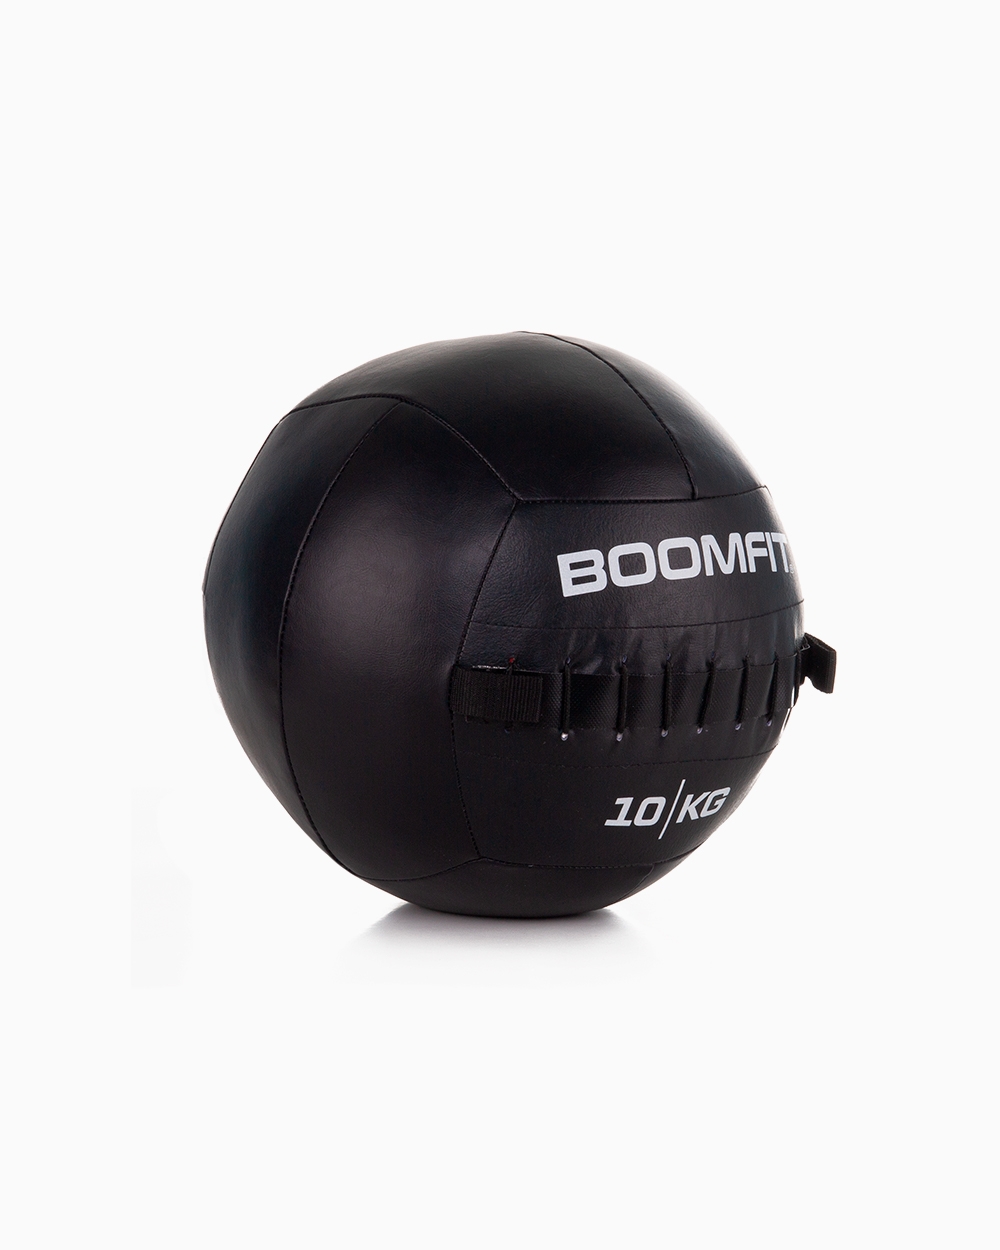 Balón Medicinal Boomfit 10kg - Wall Ball 10kg - Boomfit  MKP